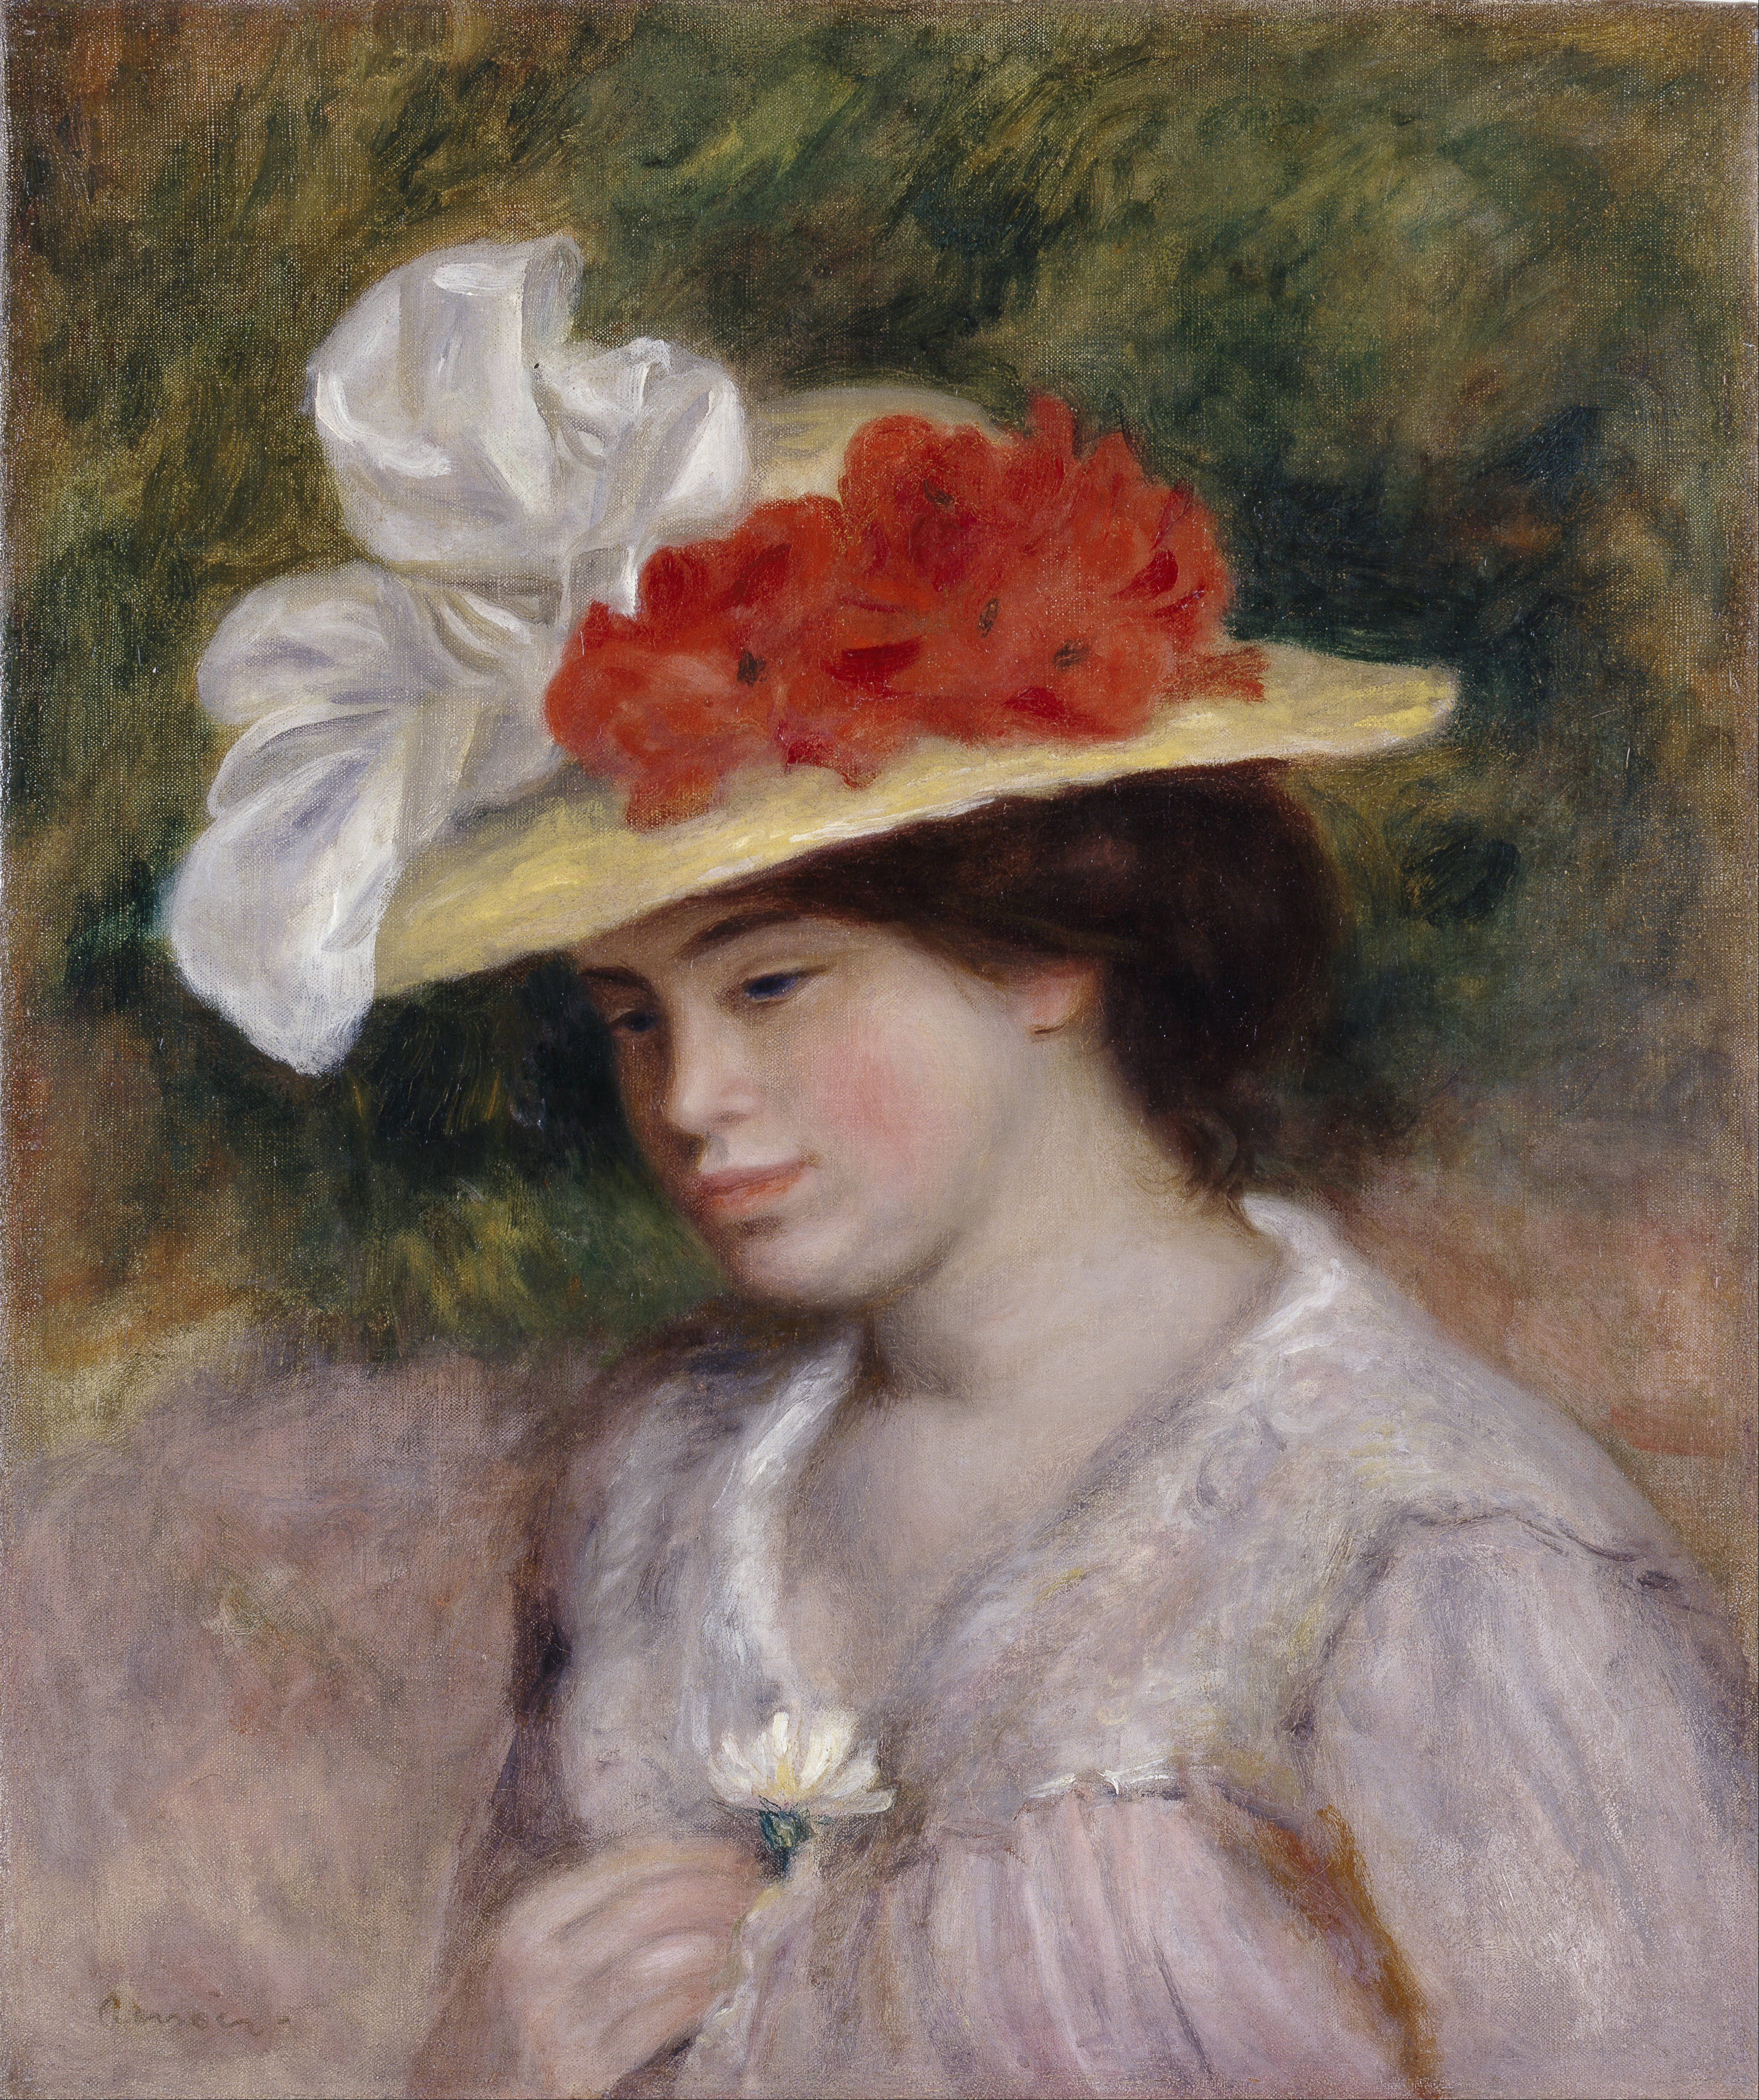 Auguste Renoir - Woman in Flowered Hat - Google Art Project.jpg - Wikipedia